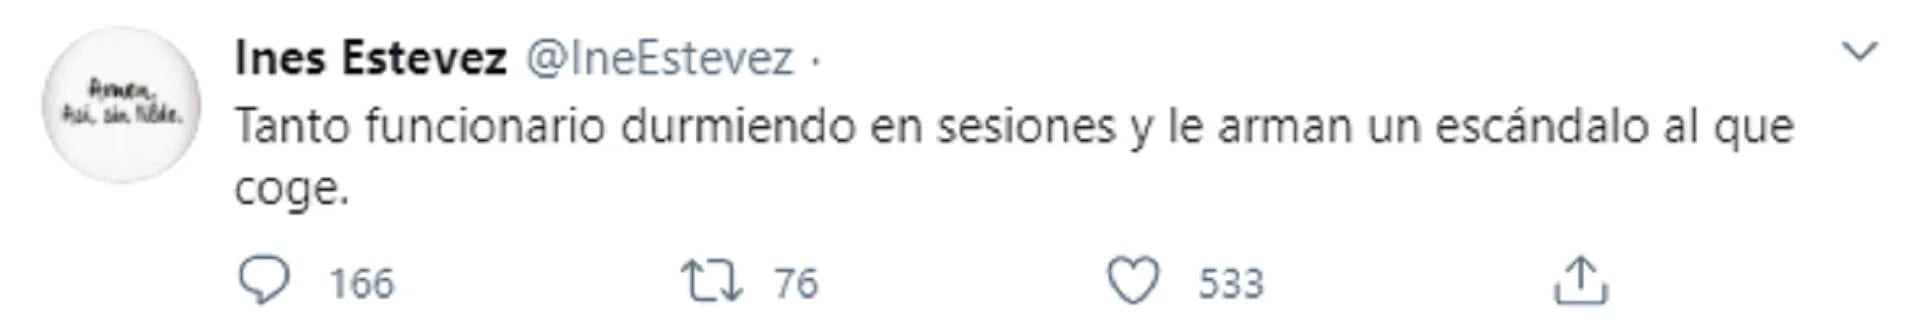 El tuit de Inés Estevez